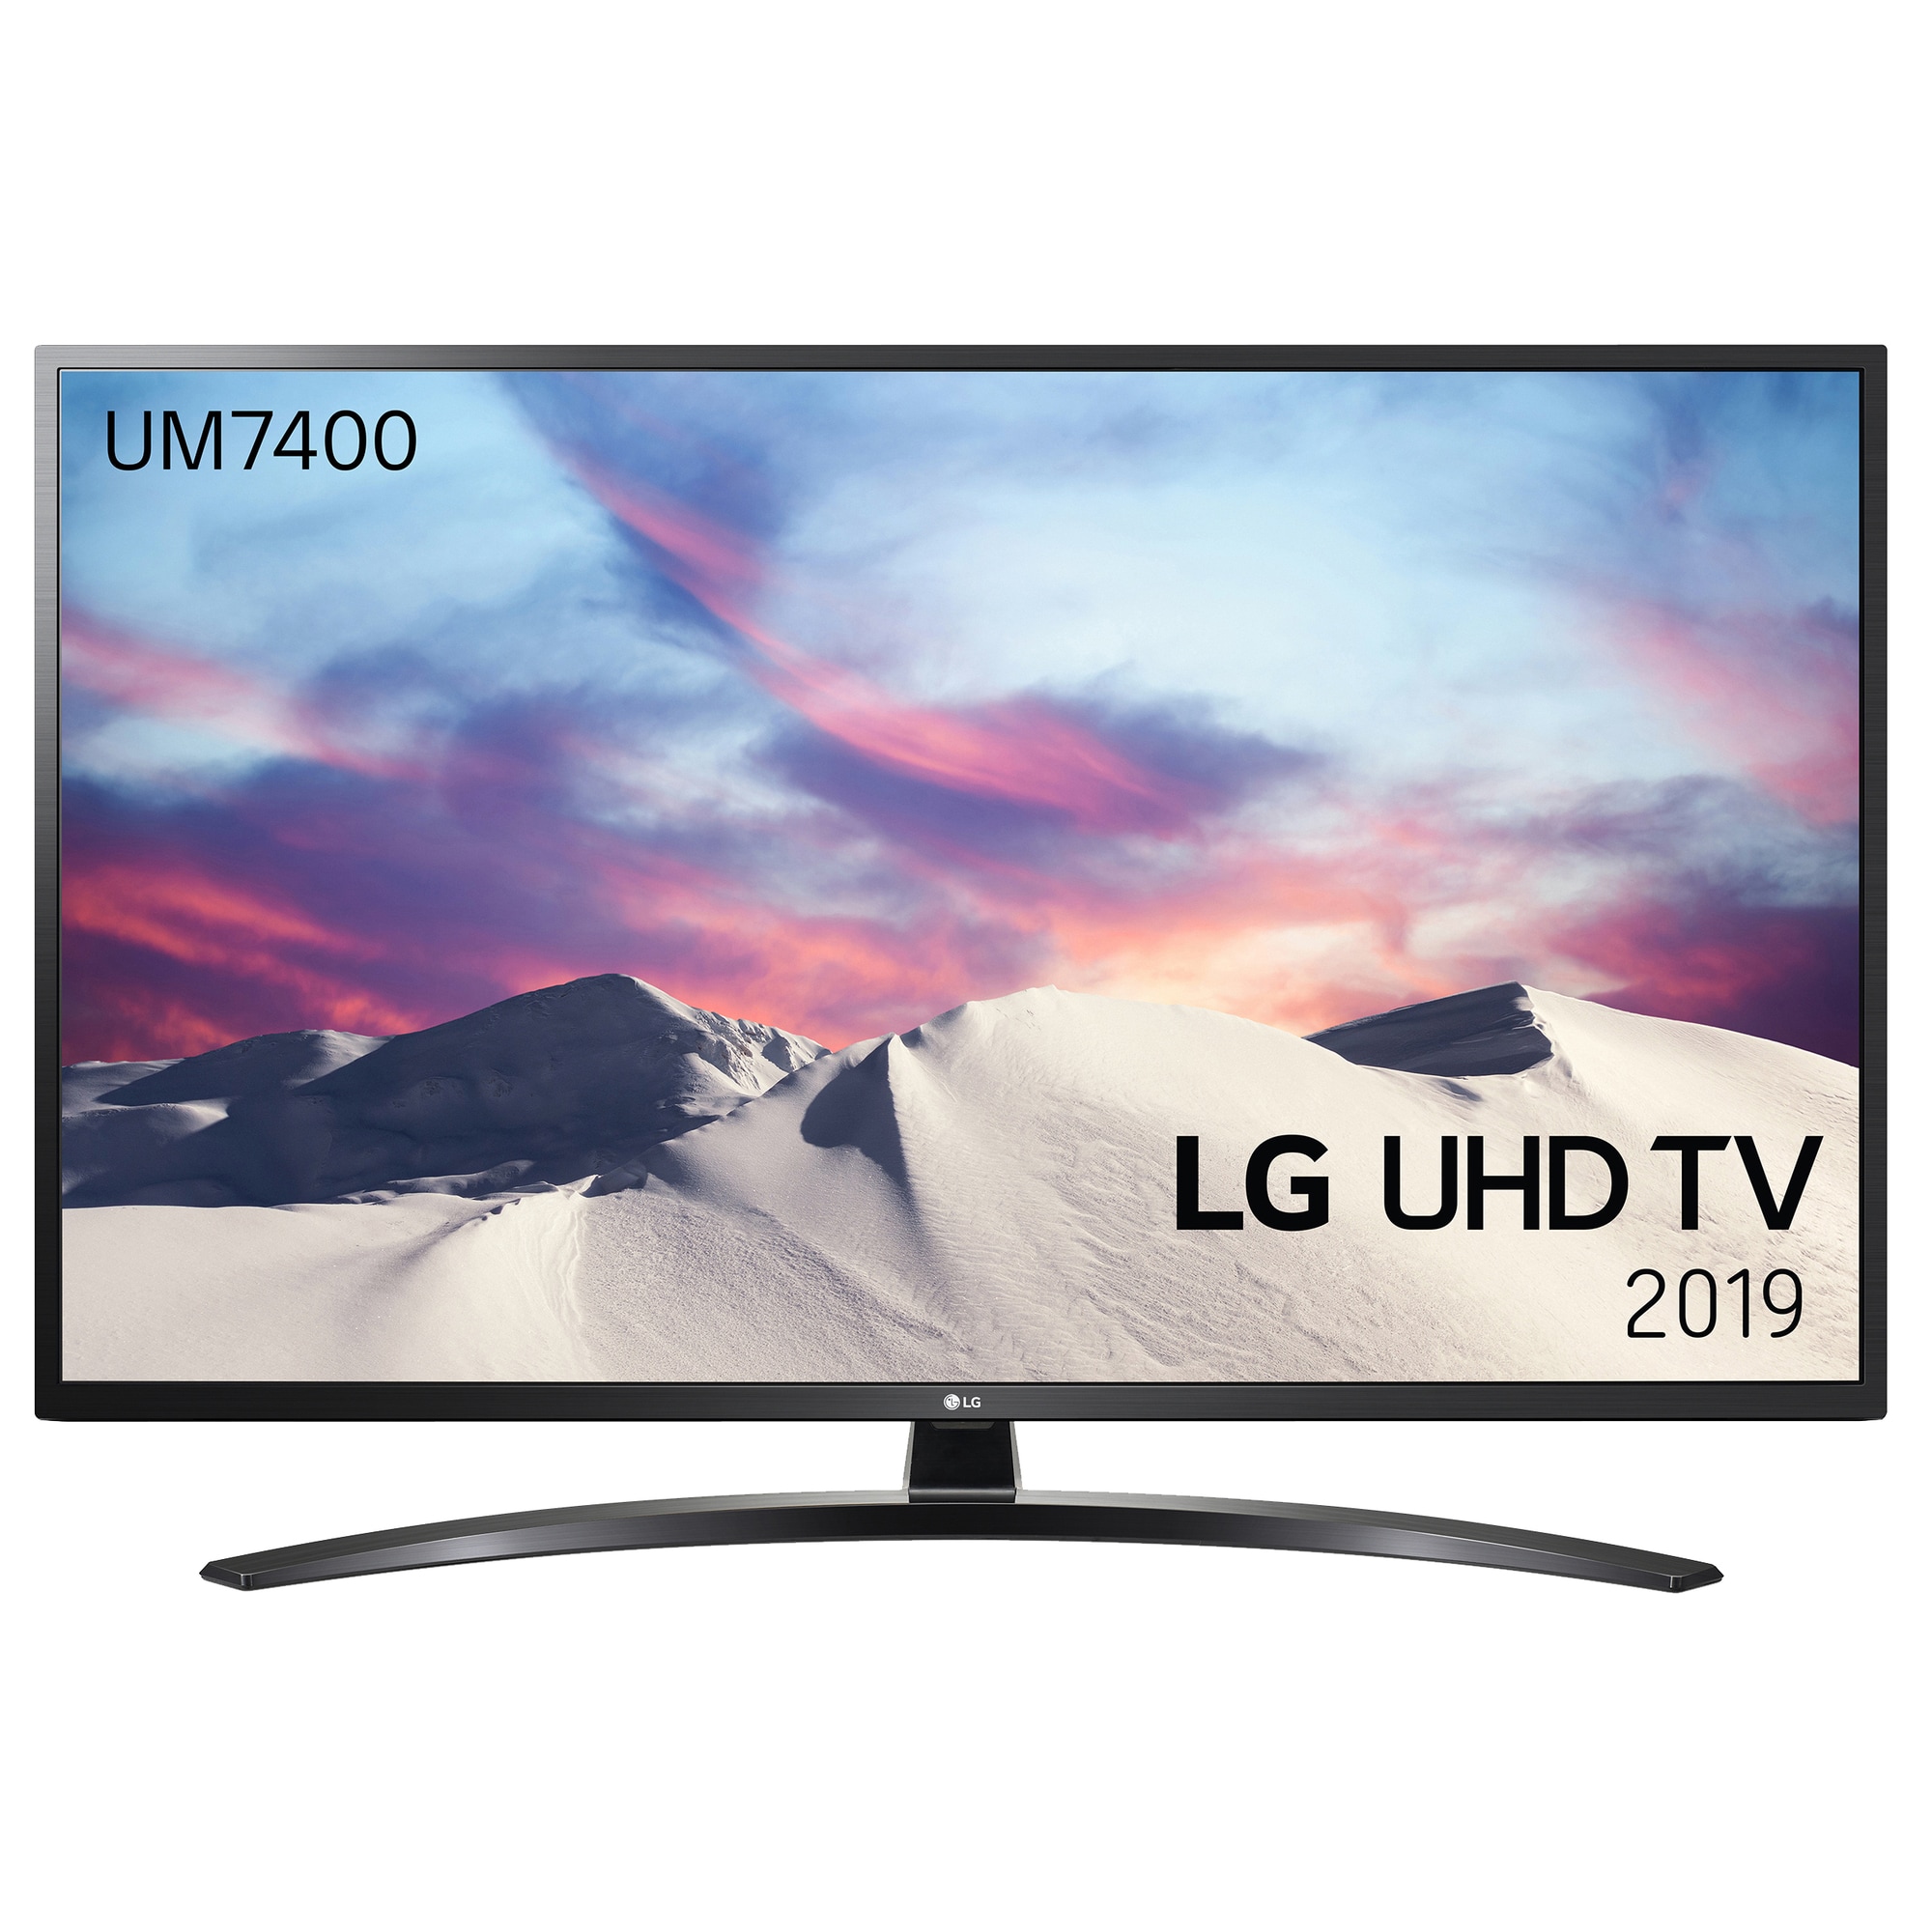 LG 49" UM7400 4K UHD Smart TV 49UM7400 - Elkjøp